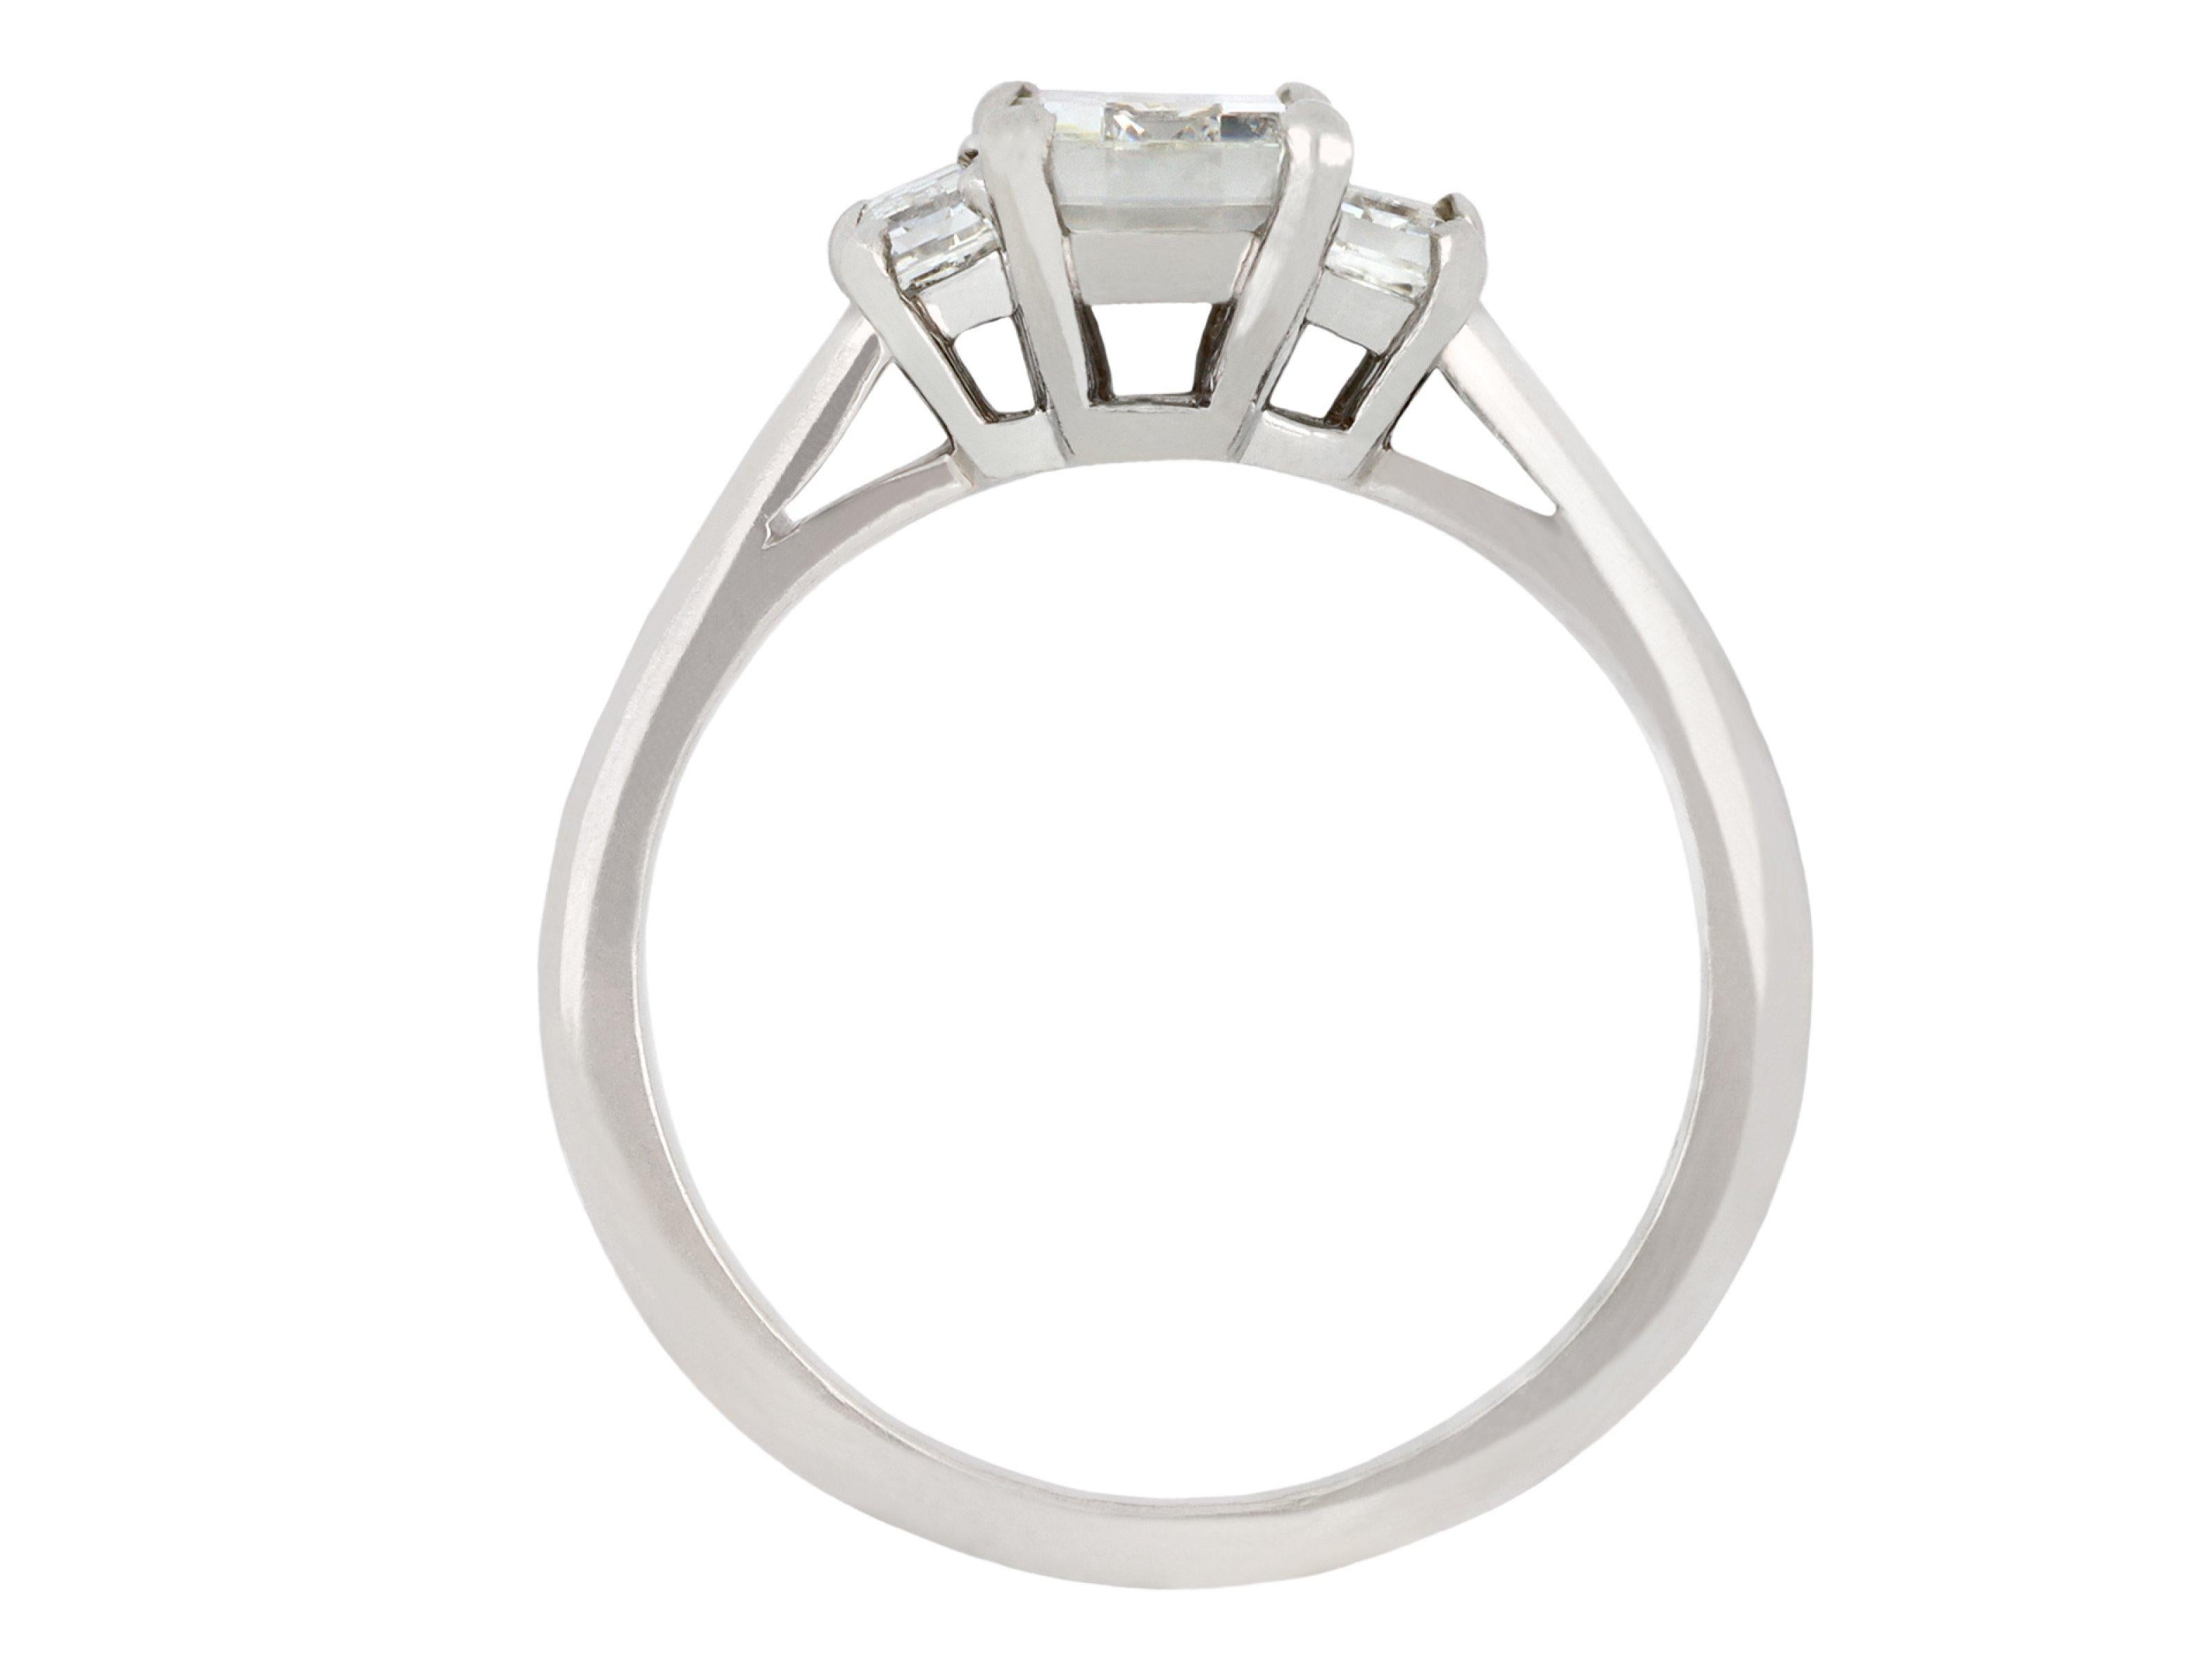 Cartier Diamant Flanke Solitär Ring. In der Mitte befindet sich ein rechteckiger Diamant im Stufenschliff in einer offenen Krallenfassung mit einem ungefähren Gewicht von 0,95 Karat, flankiert von zwei rechteckigen Diamanten im Baguetteschliff in